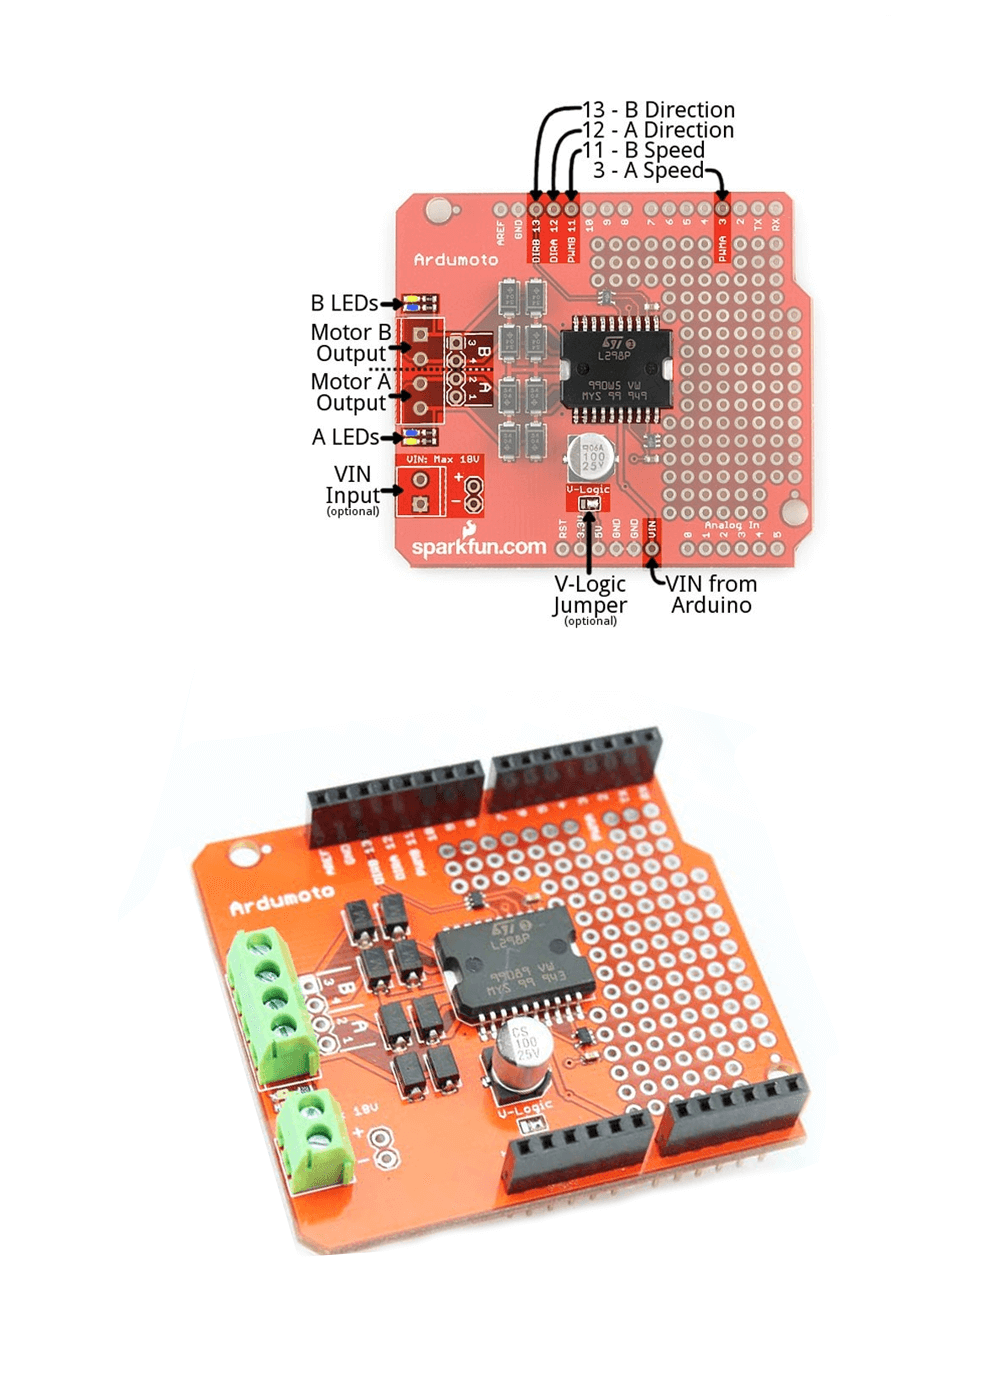 Arduino ile Ardumoto Kullanarak Dc Motor Kontrolü | Robocombo